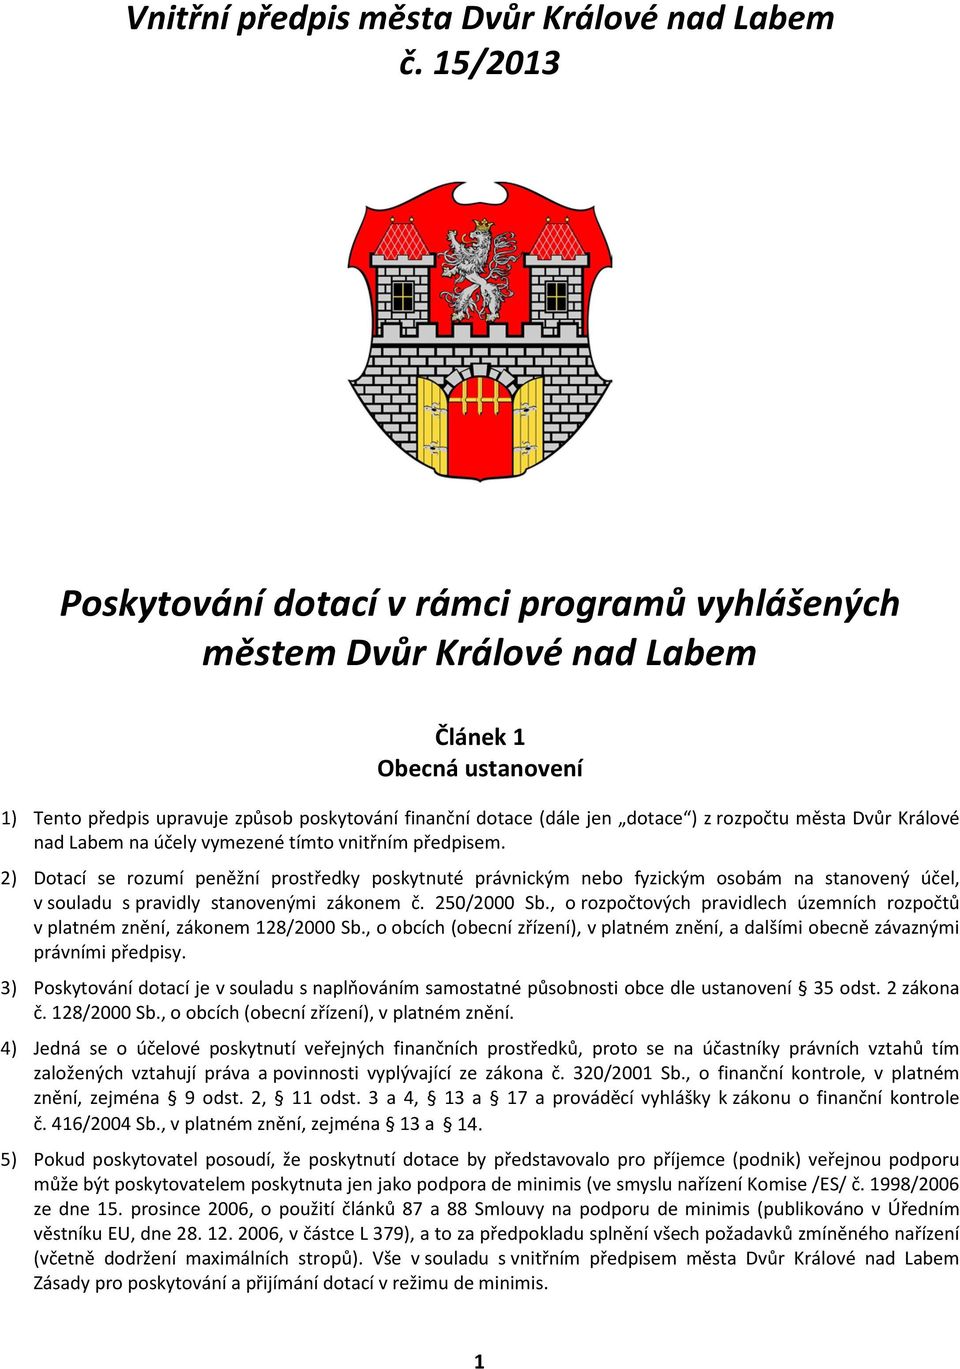 rozpočtu města Dvůr Králové nad Labem na účely vymezené tímto vnitřním předpisem.